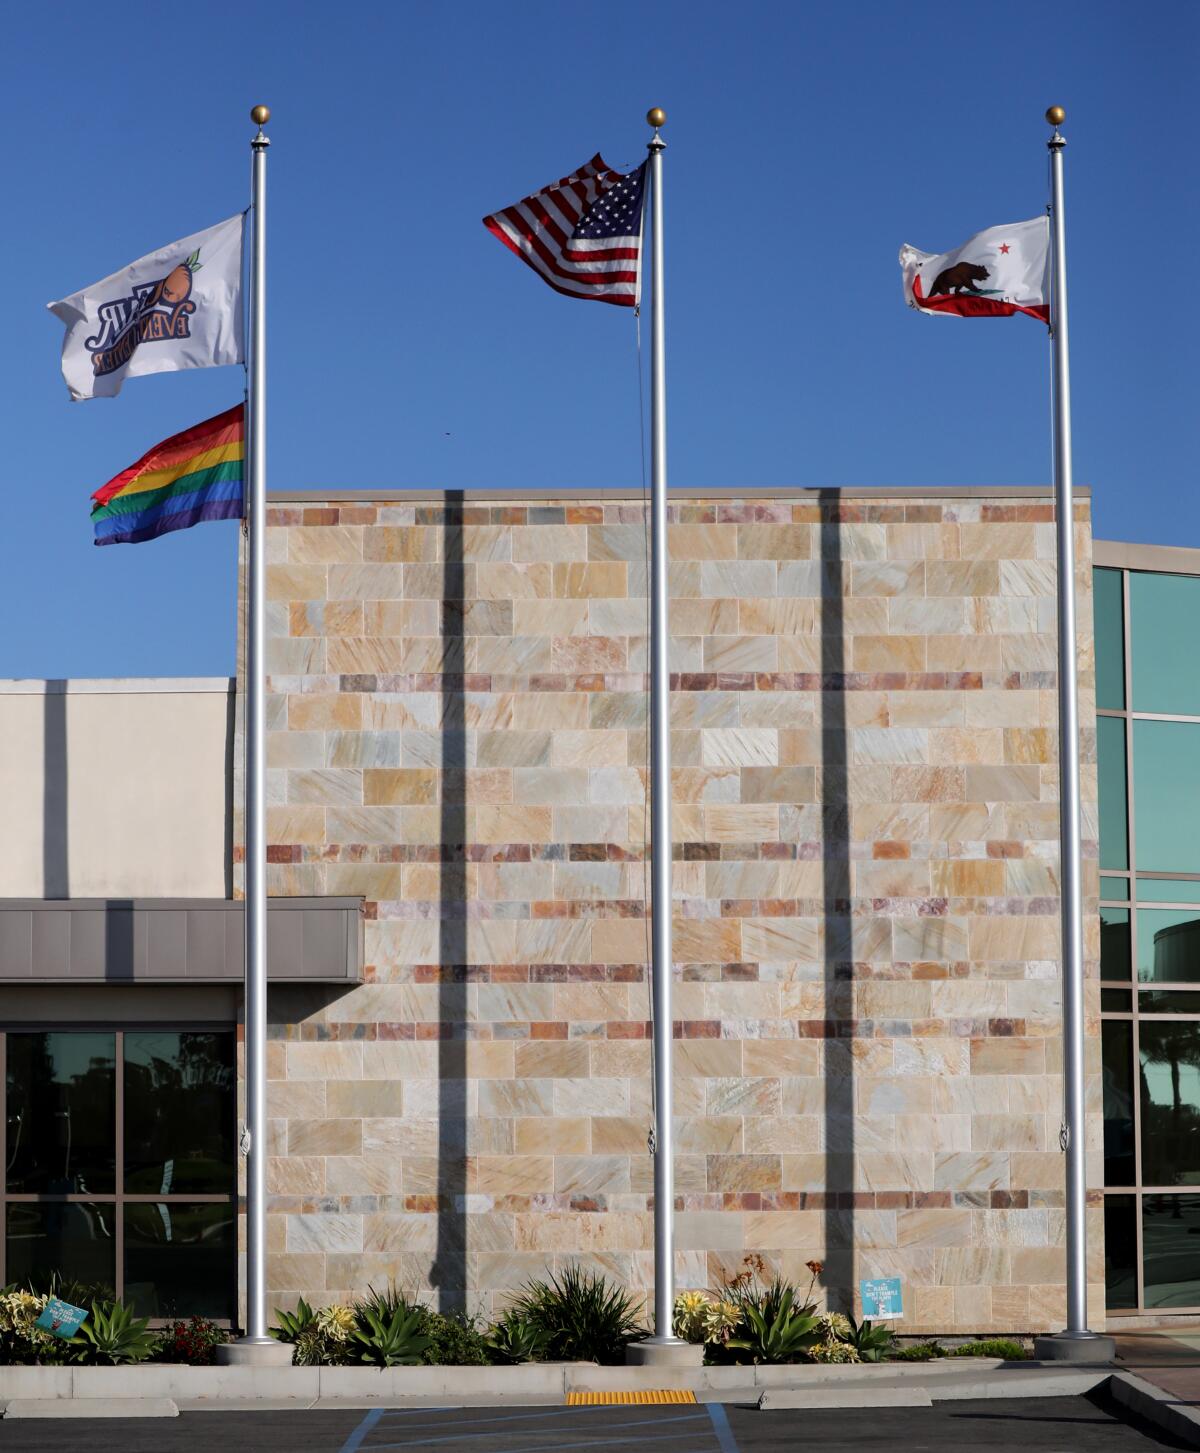 The O.C. Fair, rainbow, U.S. and California flags 